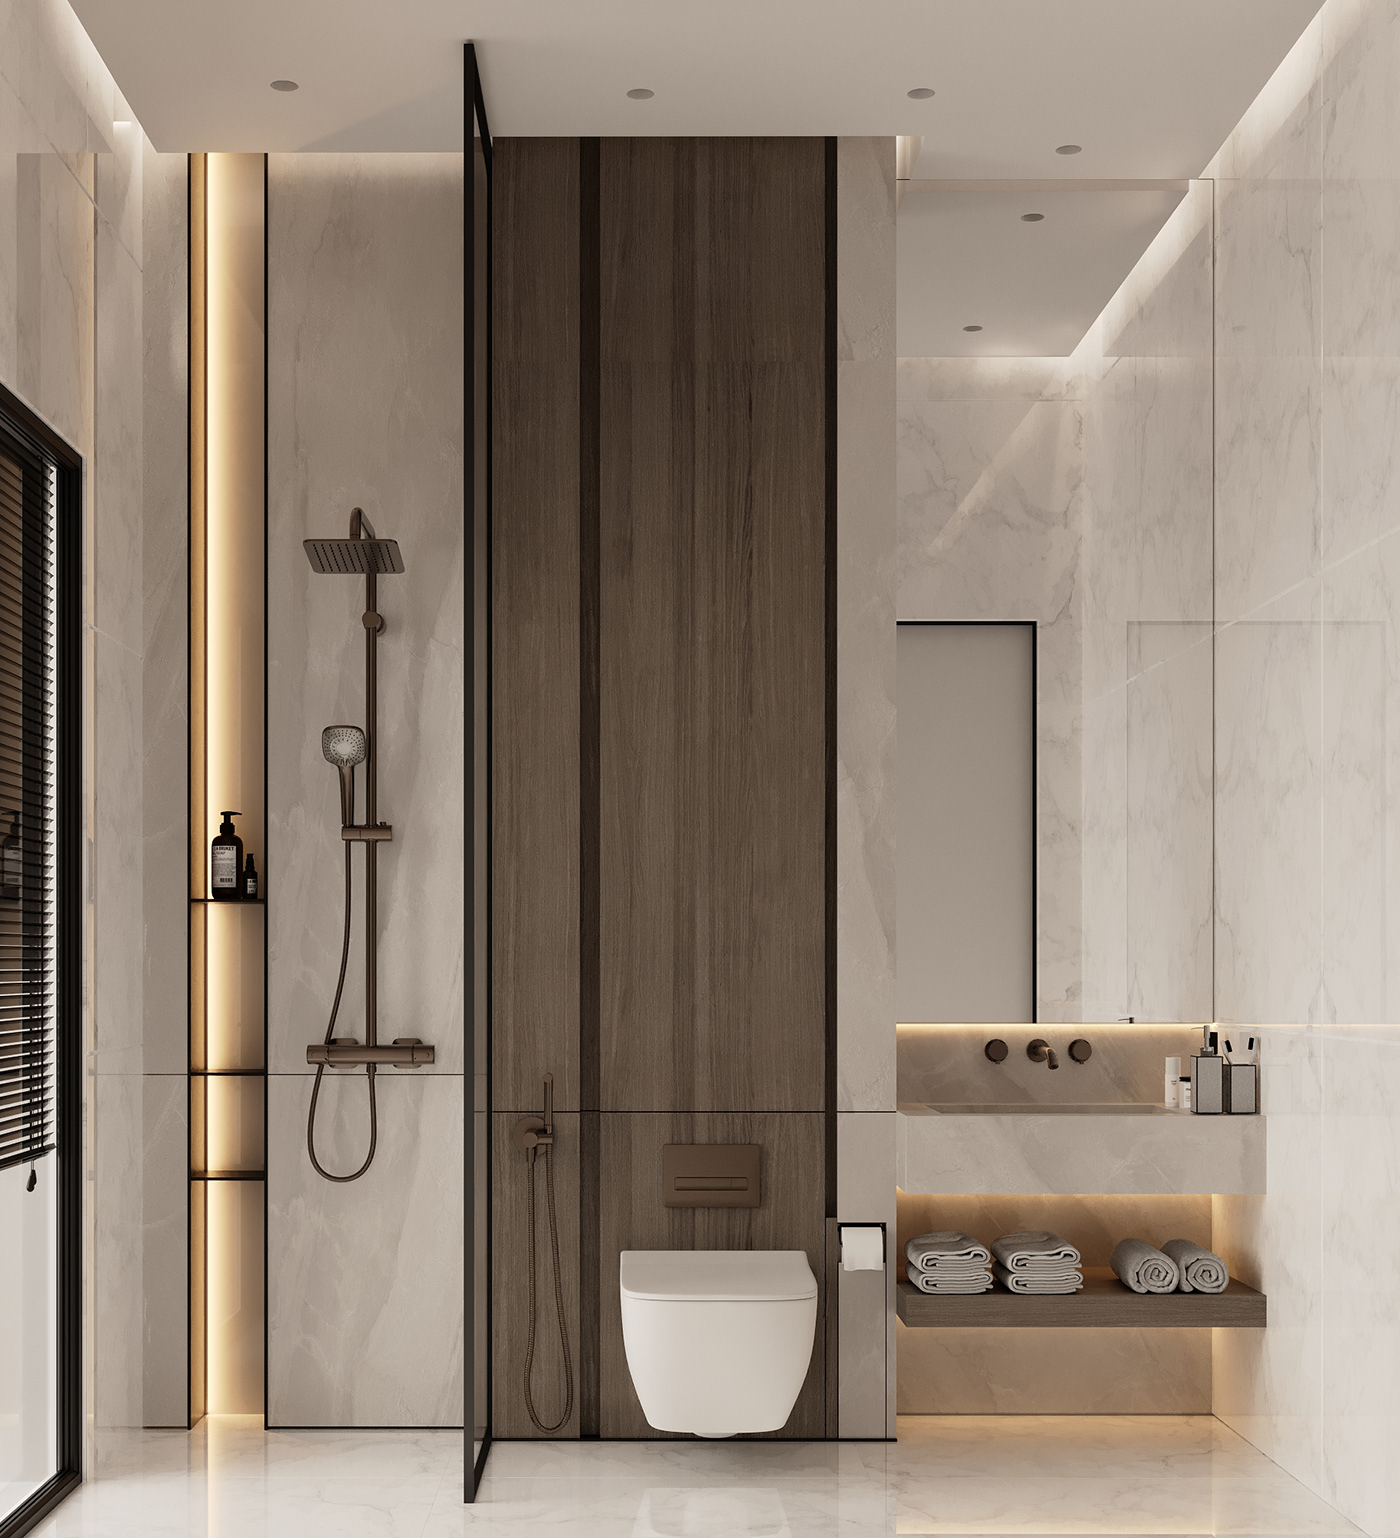 indoor interior design  architecture Render visualization 3D modern corona 3ds max archviz